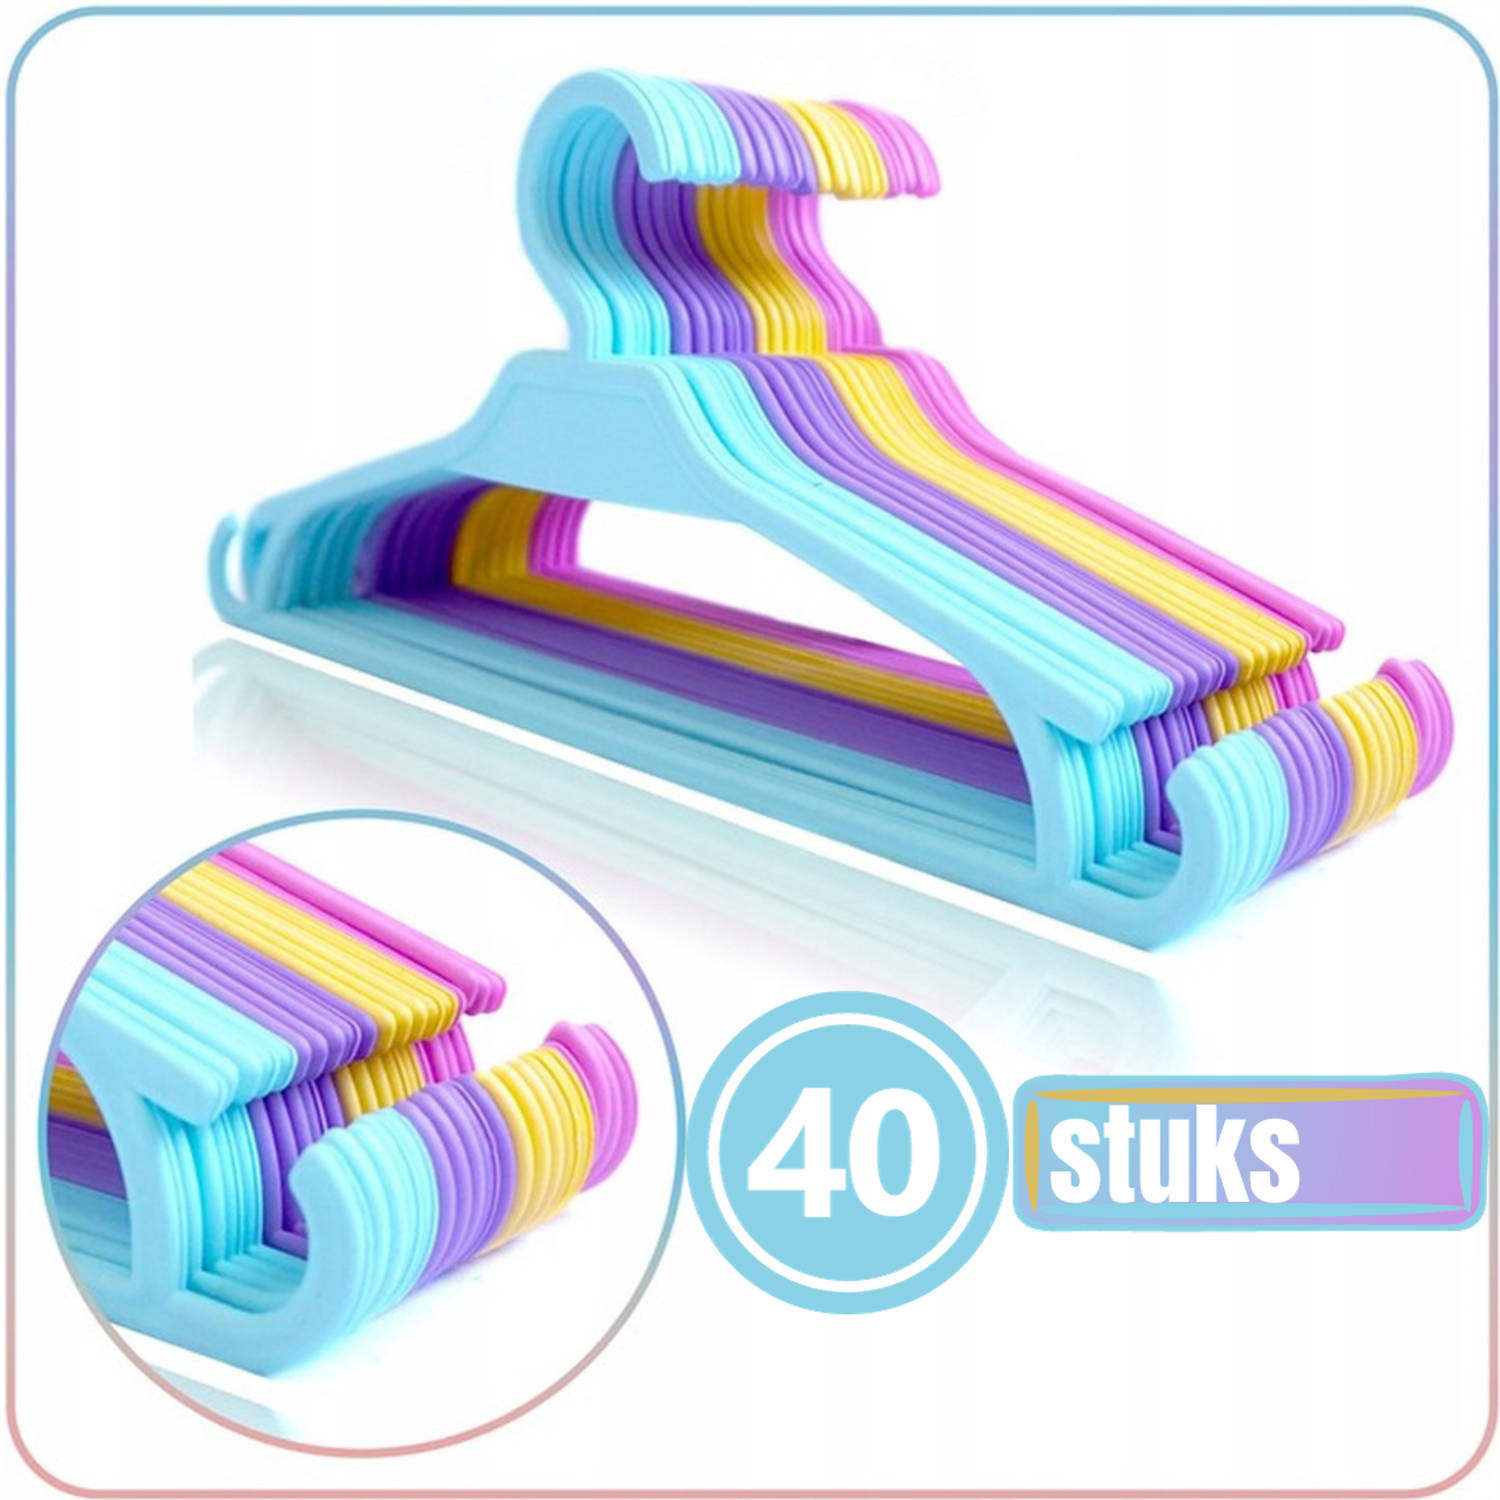 Synx Tools - kinder kledinghangers - 40 stuks - Mix kleuren - Kinderkleding - Babykleding - Kleerhangers - Kinderen